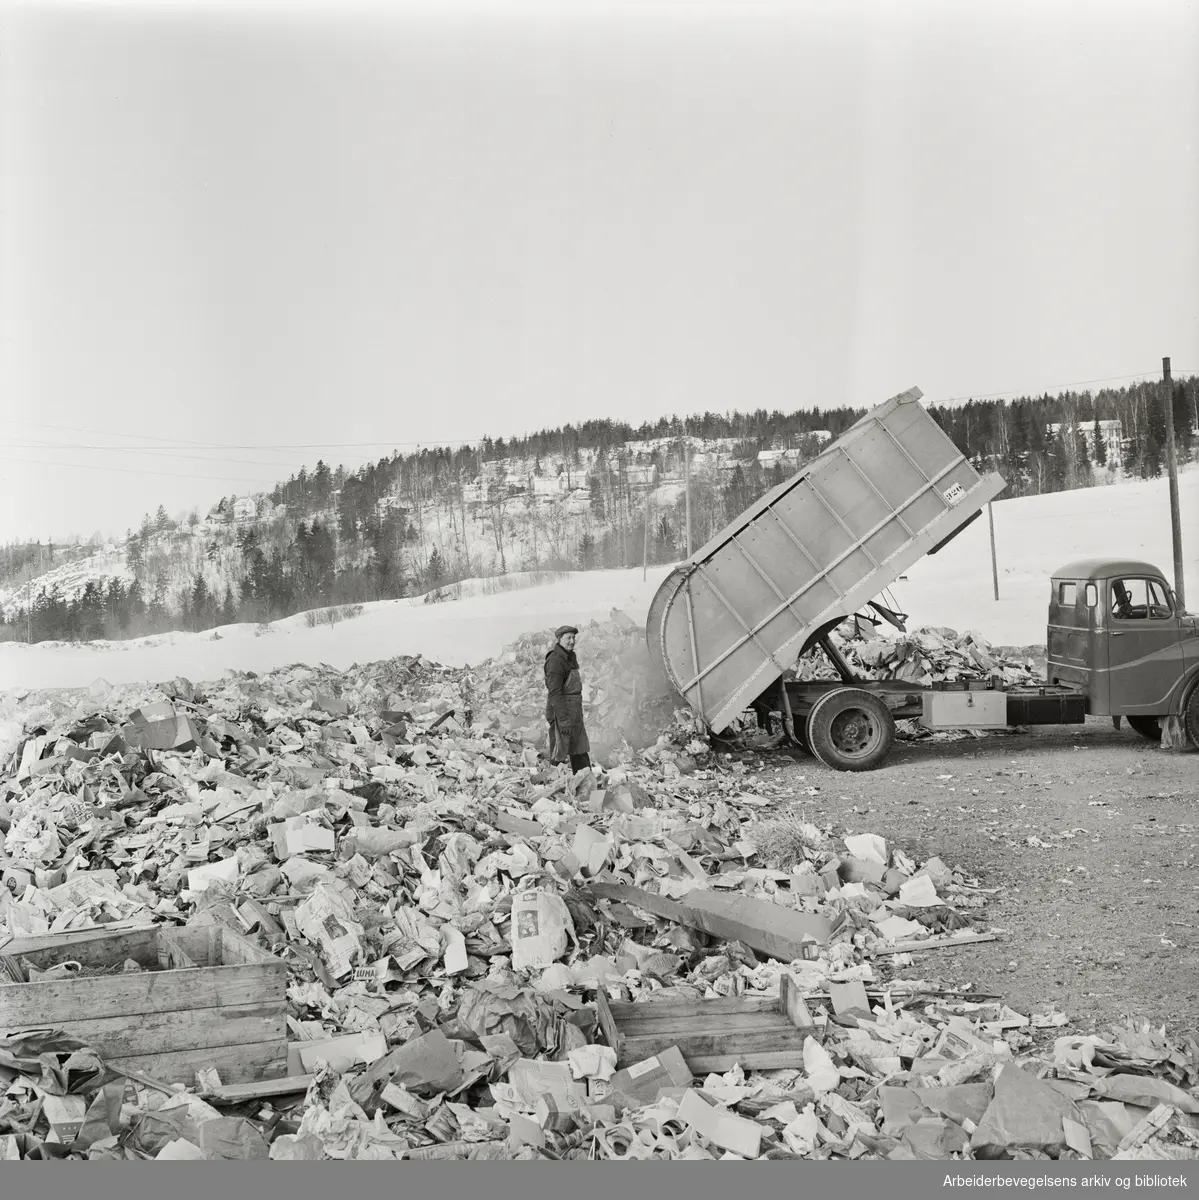 Renholdsverkets søppelfyllinger på Romsås - Sannerud. Kilde til luftforurensing i hele Grorud-området. Februar 1963.